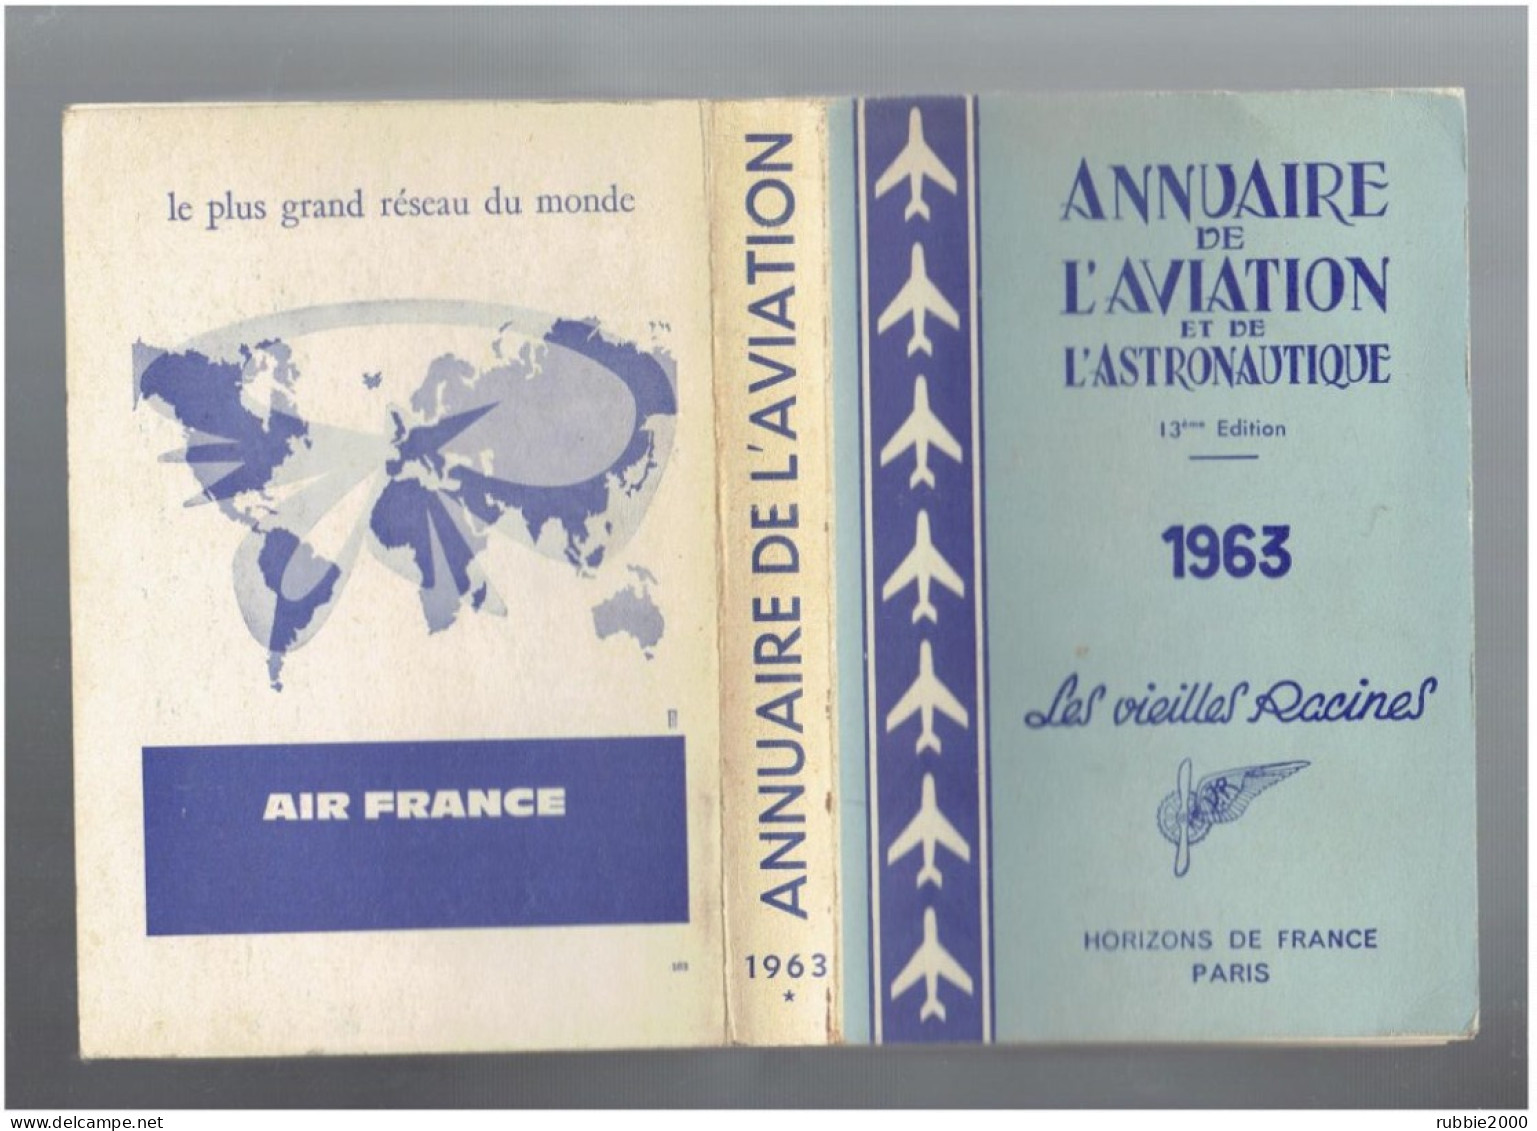 1963 ANNUAIRE DE L AVIATION ET DE L ASTRONAUTIQUE LES VIEILLES RACINES HORIZONS DE FRANCE AVION - Avión